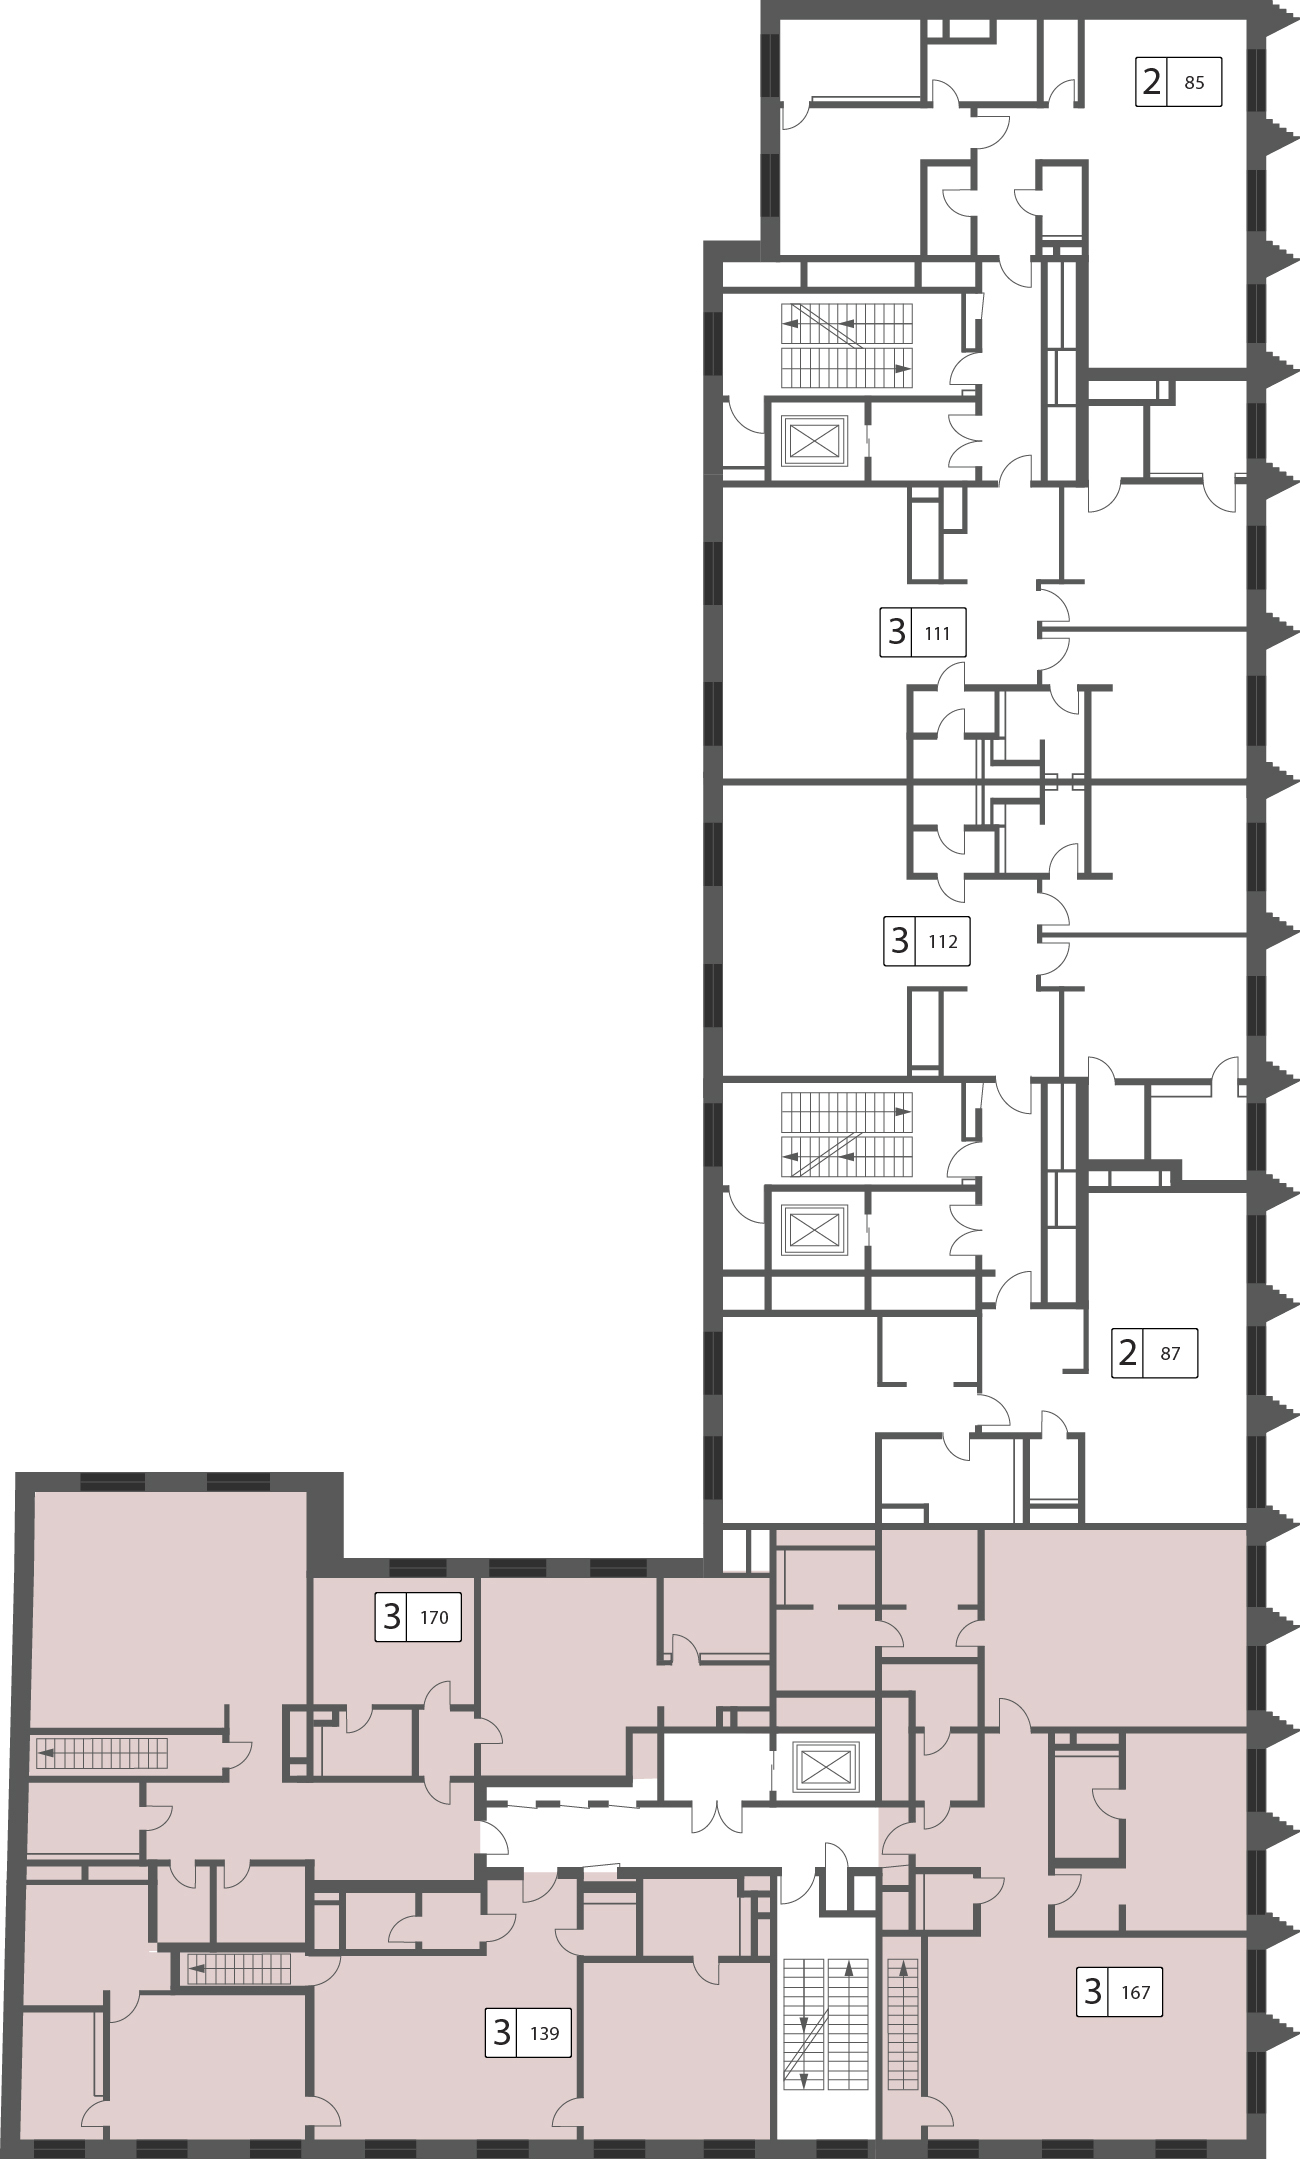 Трехкомнатная квартира 117.9м², 5 этаж, Корп. 3 (Порода) ЖК «Большая Дмитровка IX»